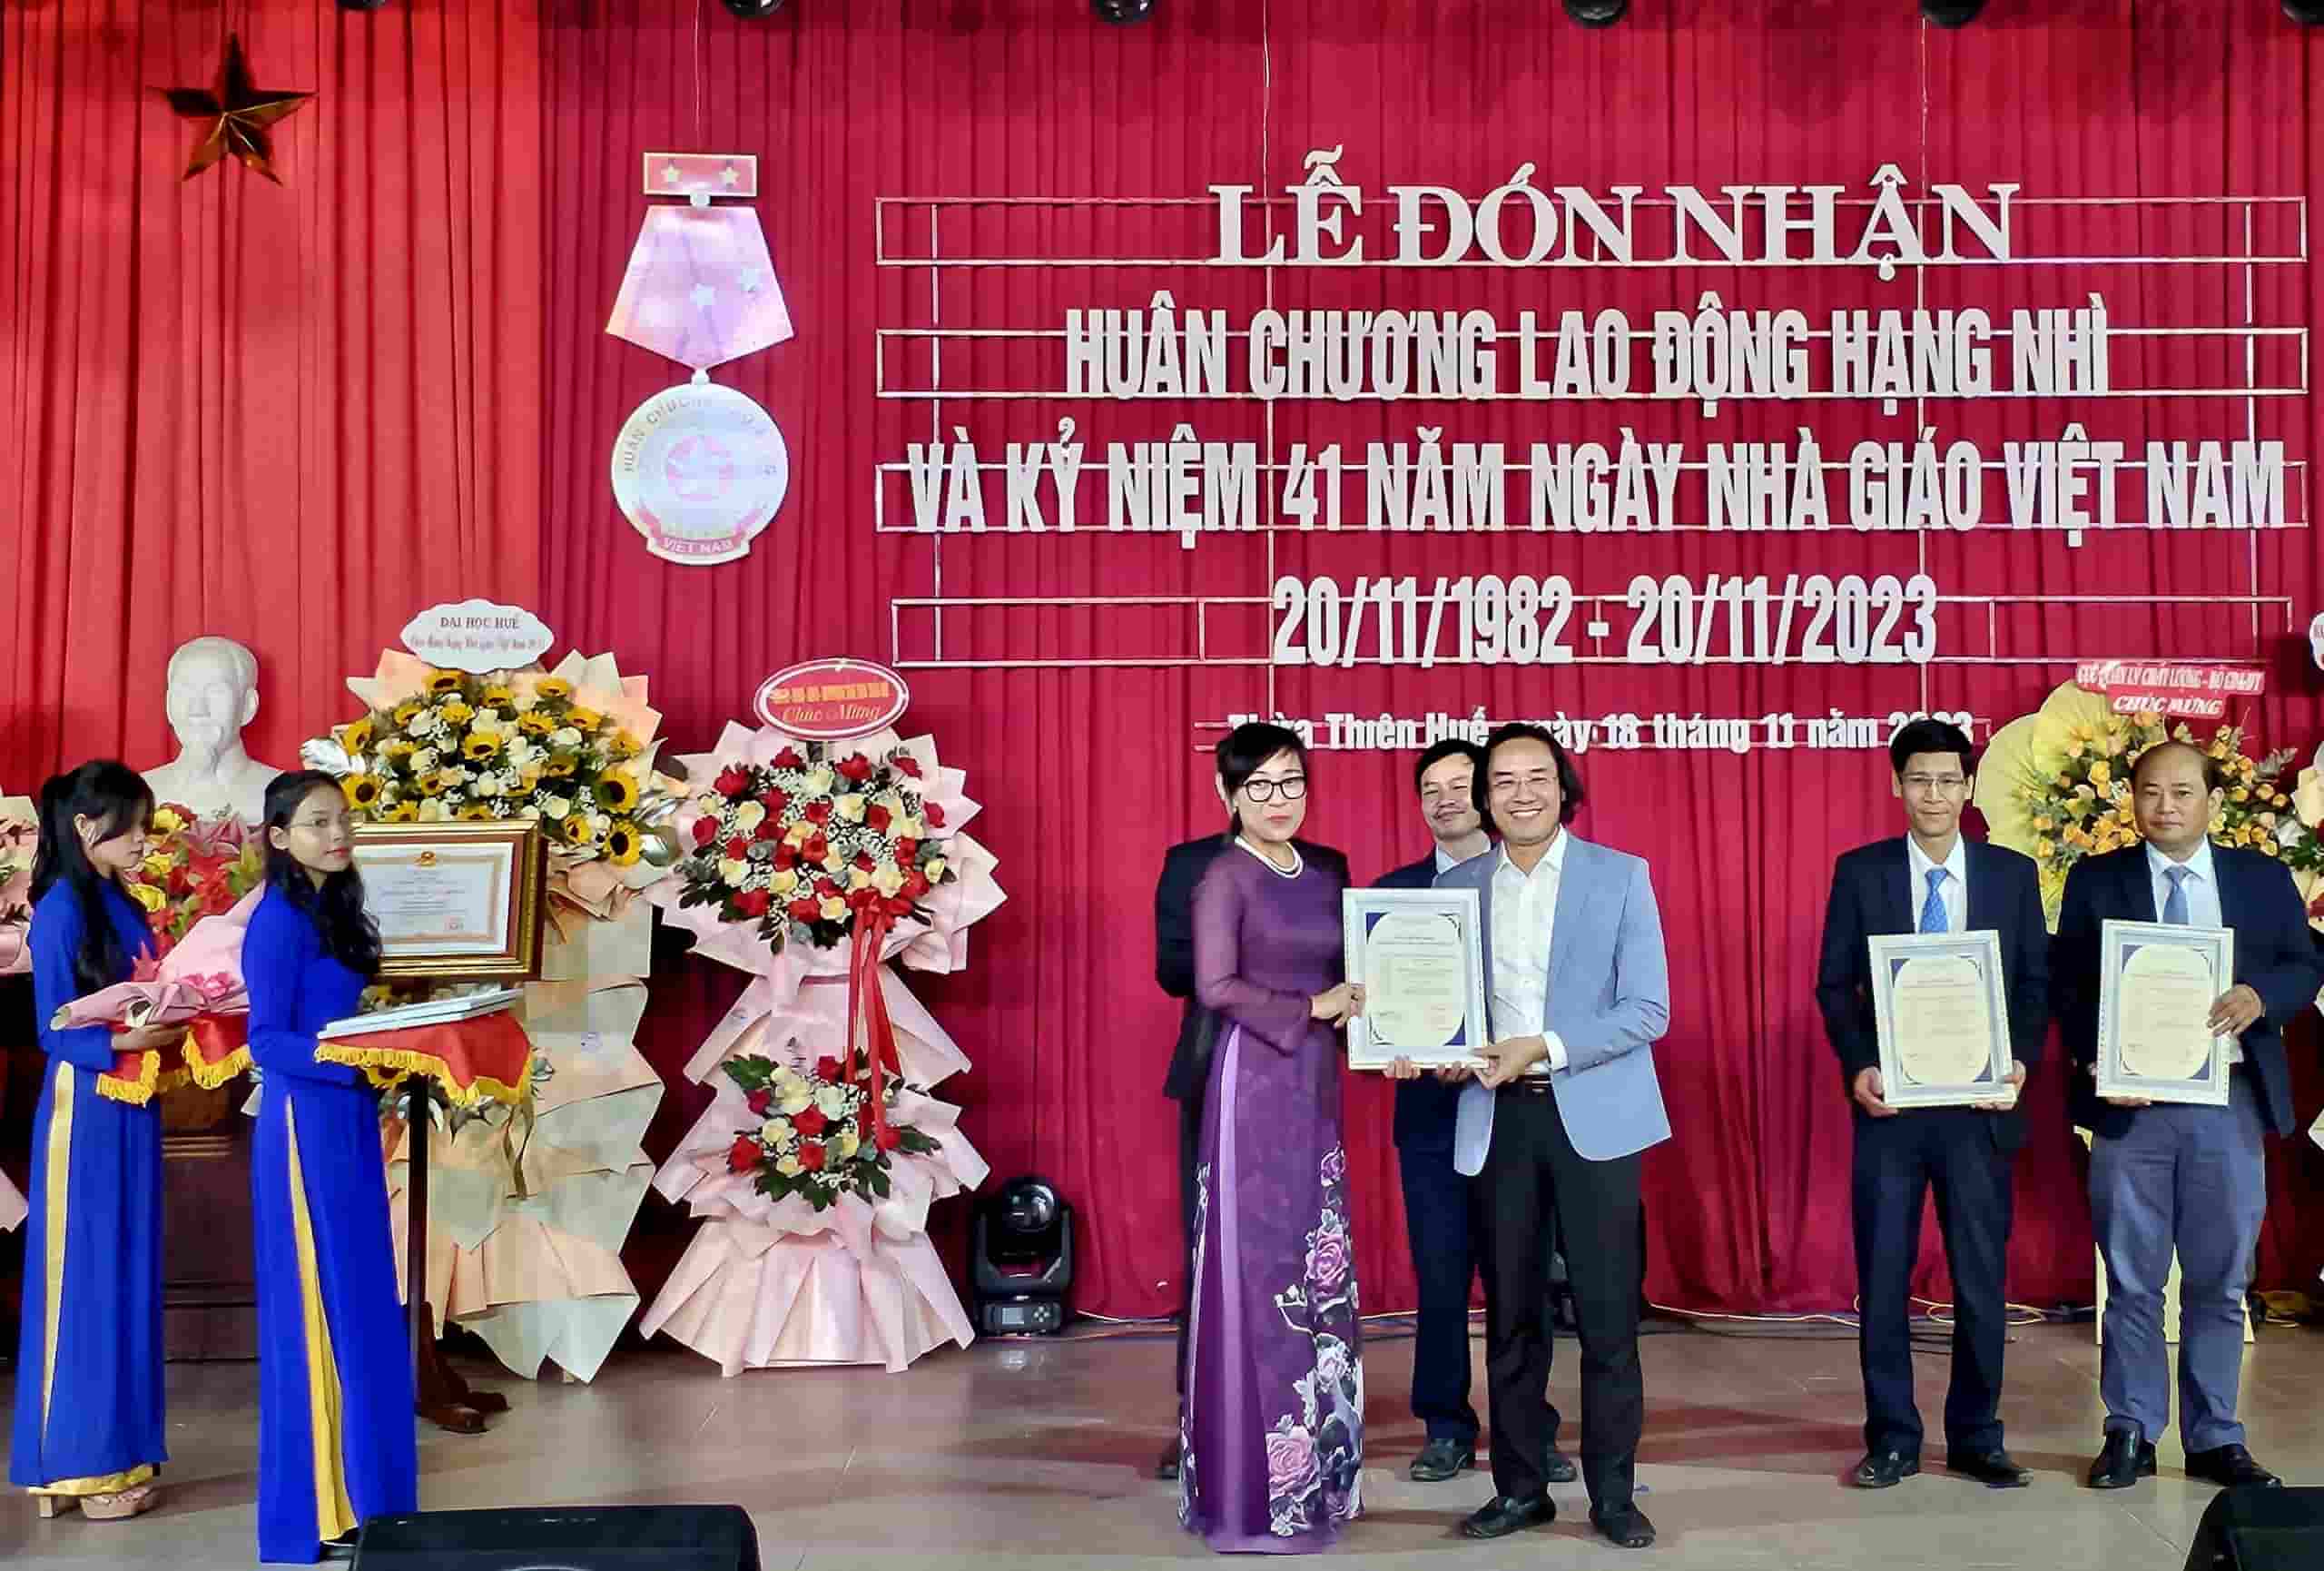 Bà Tạ Thị Thu Hiền - Giám đốc Trung tâm Kiểm định chất lượng giáo dục - ĐH Quốc gia Hà Nội trao chứng nhận đạt chuẩn cho các trưởng khoa nhà trường. Ảnh: Phúc Đạt.